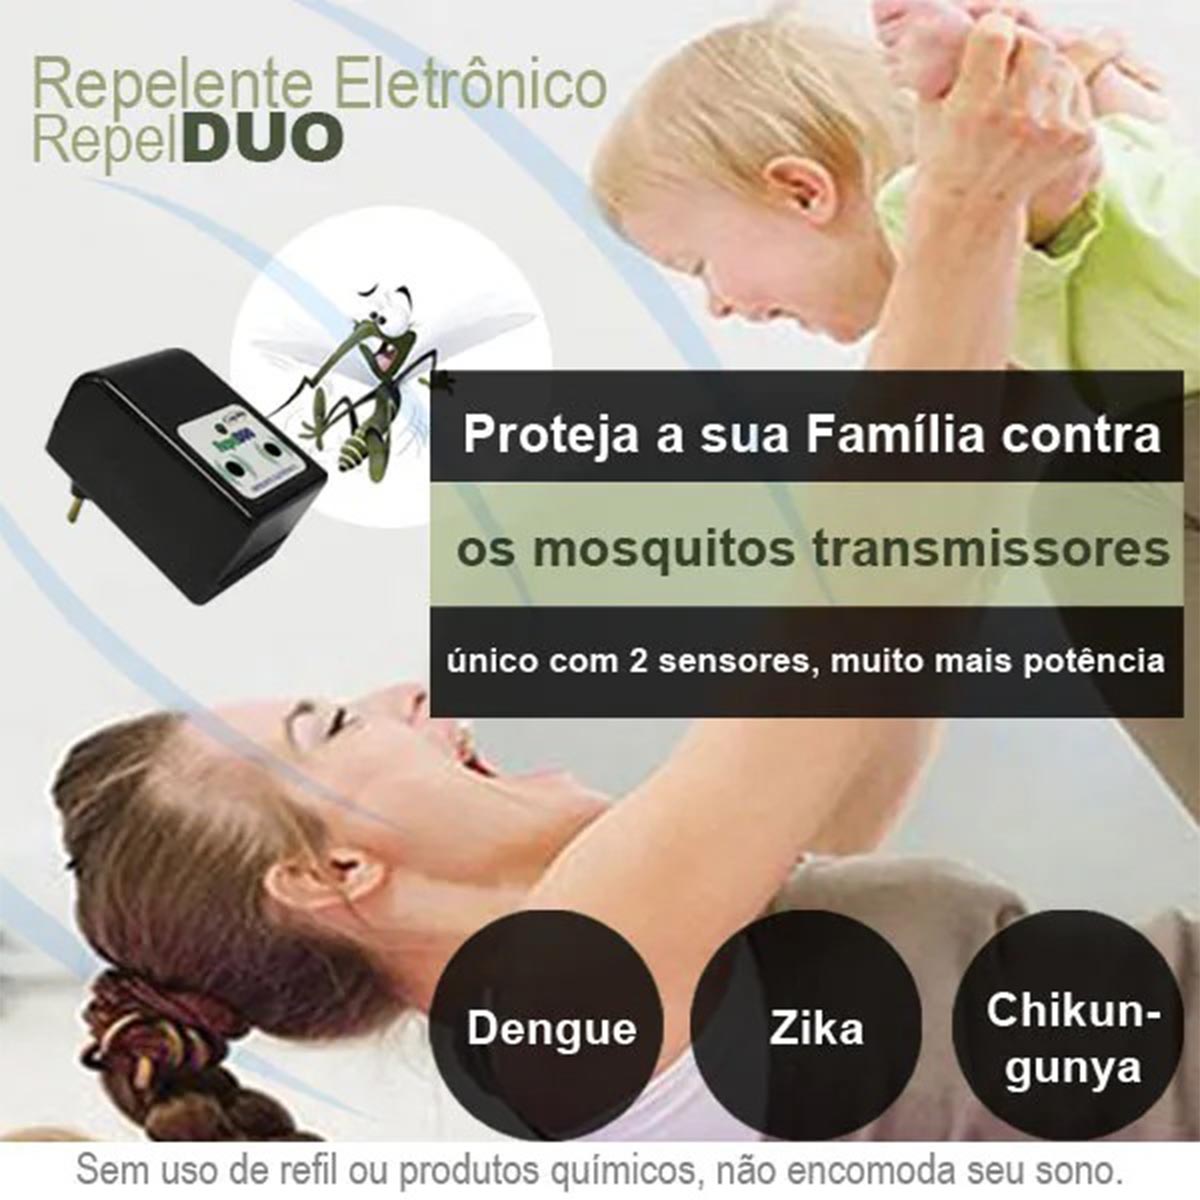 Repelente Eletrônico Repel DUO repele pernilongos e mosquitos  - 3 unidades